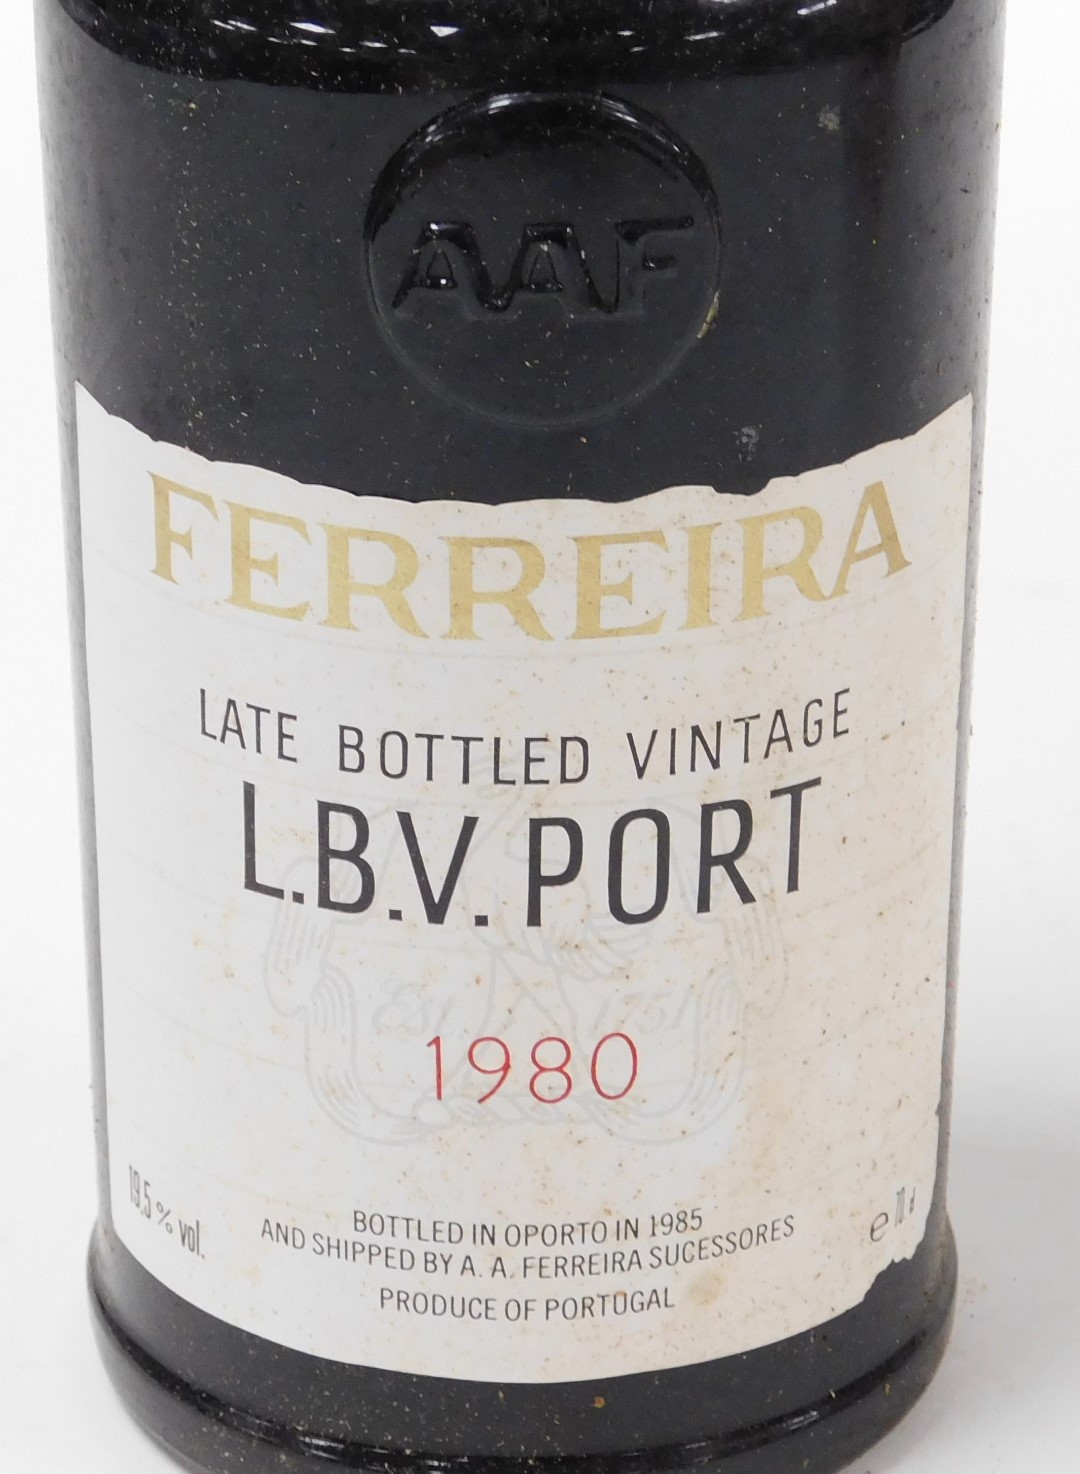 A bottle of Ferreira late bottled vintage port 1980, cased. - Image 2 of 4